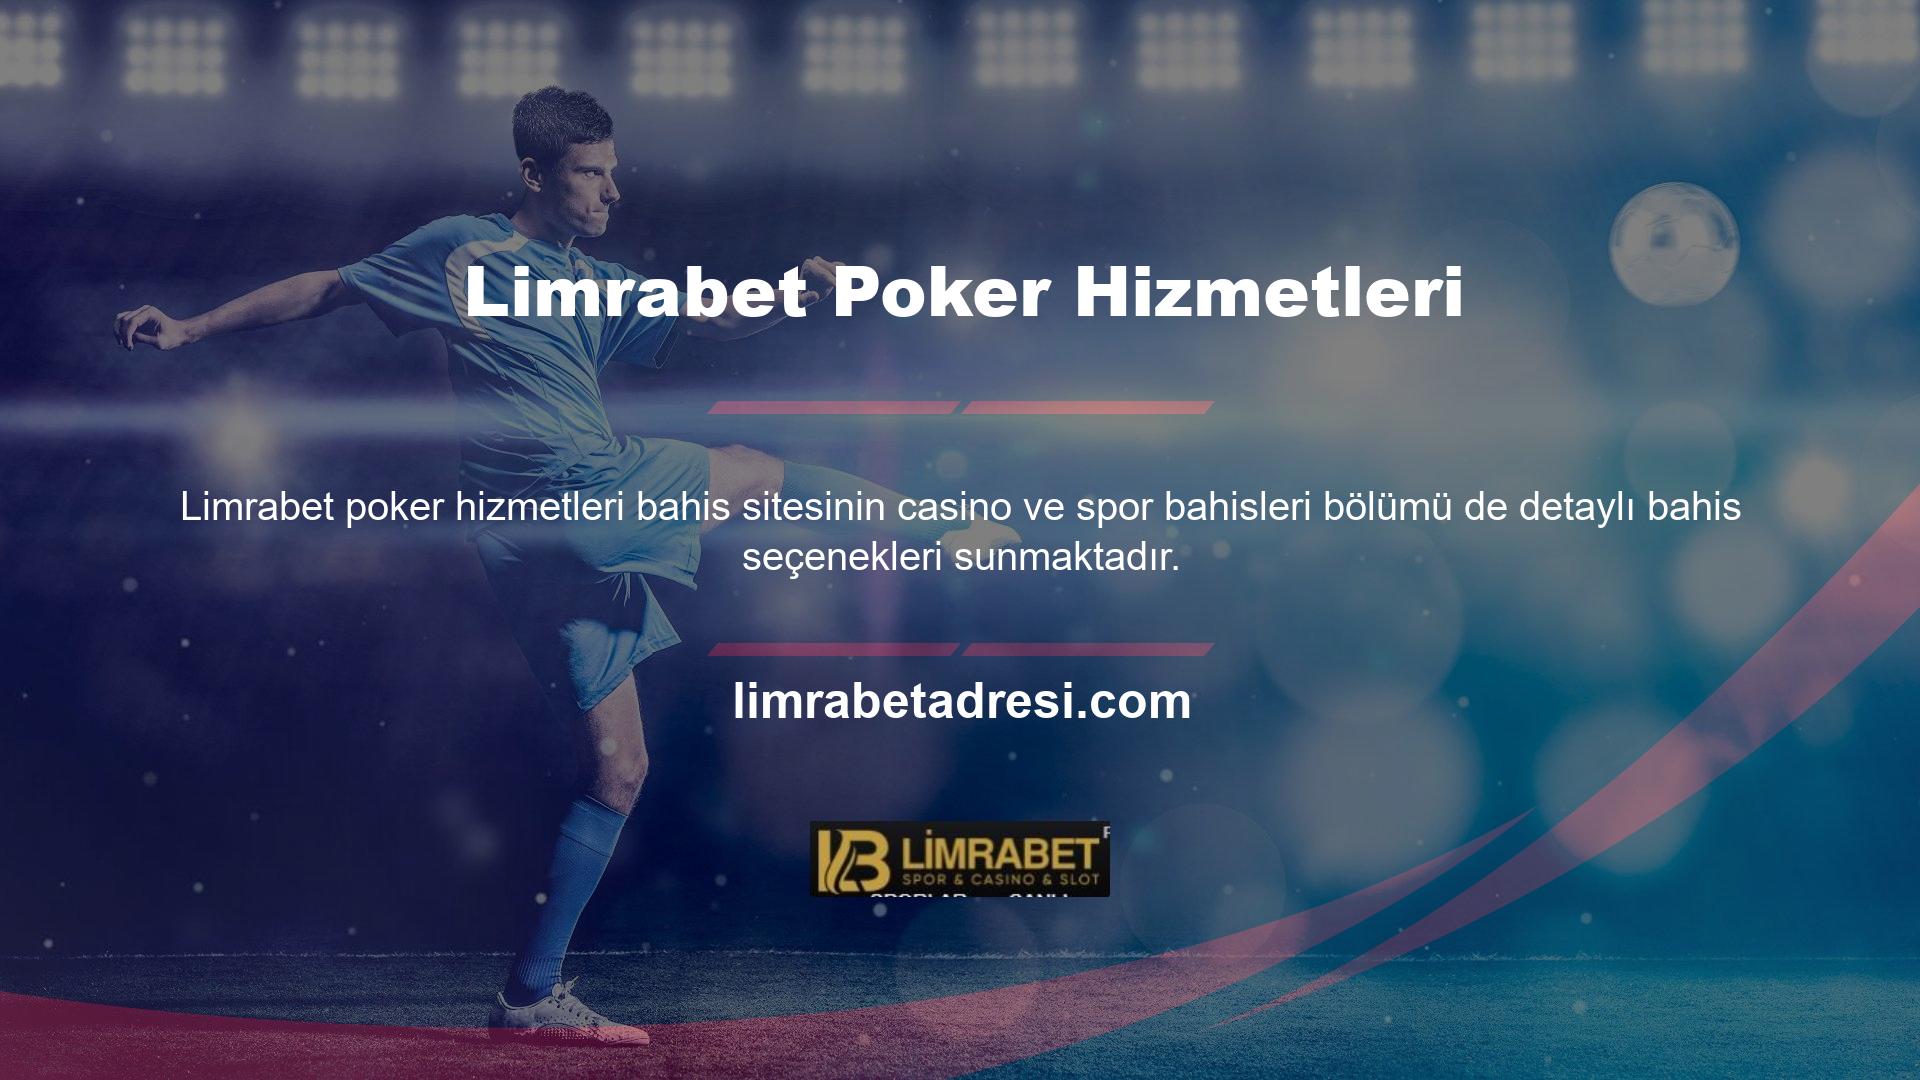 Limrabet bahis sitelerinde 7/24 bahis hizmetinin keyfini çıkarın ve lisanslı hizmet sunan Limrabet sitelerinde donmadan, takılmadan poker odalarında vakit geçirin